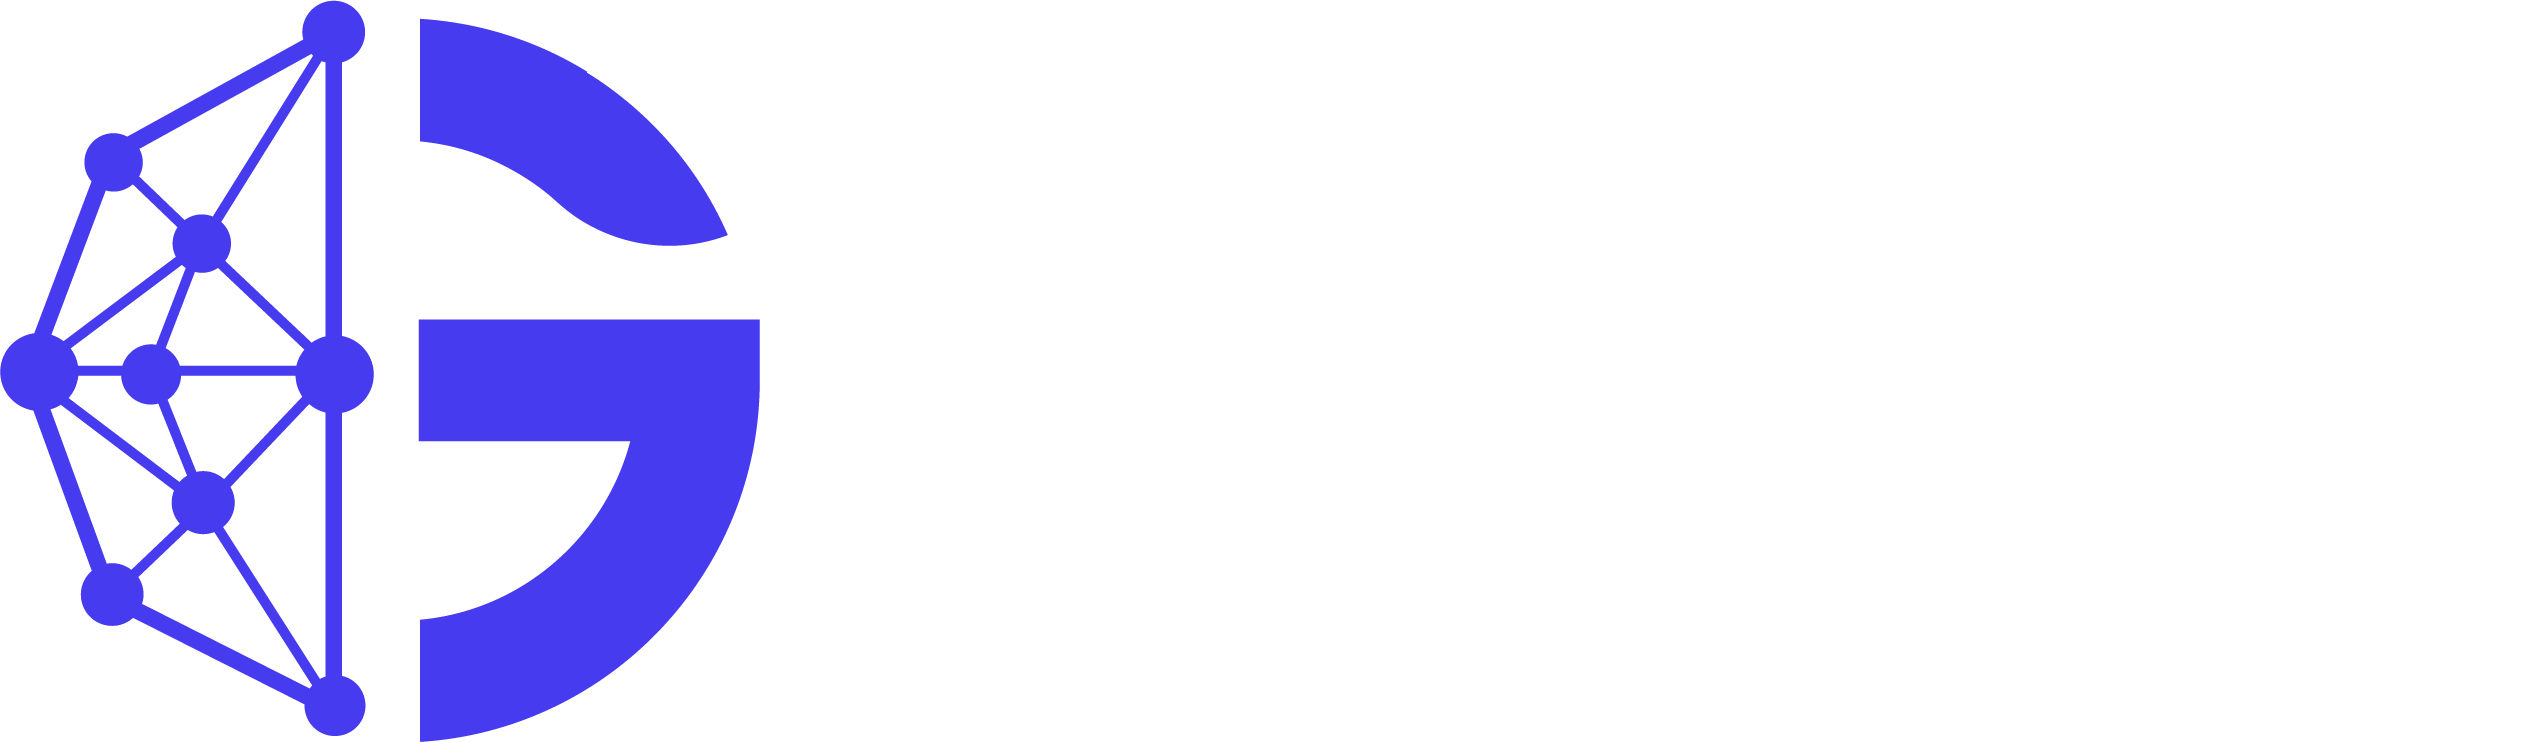 Glaact